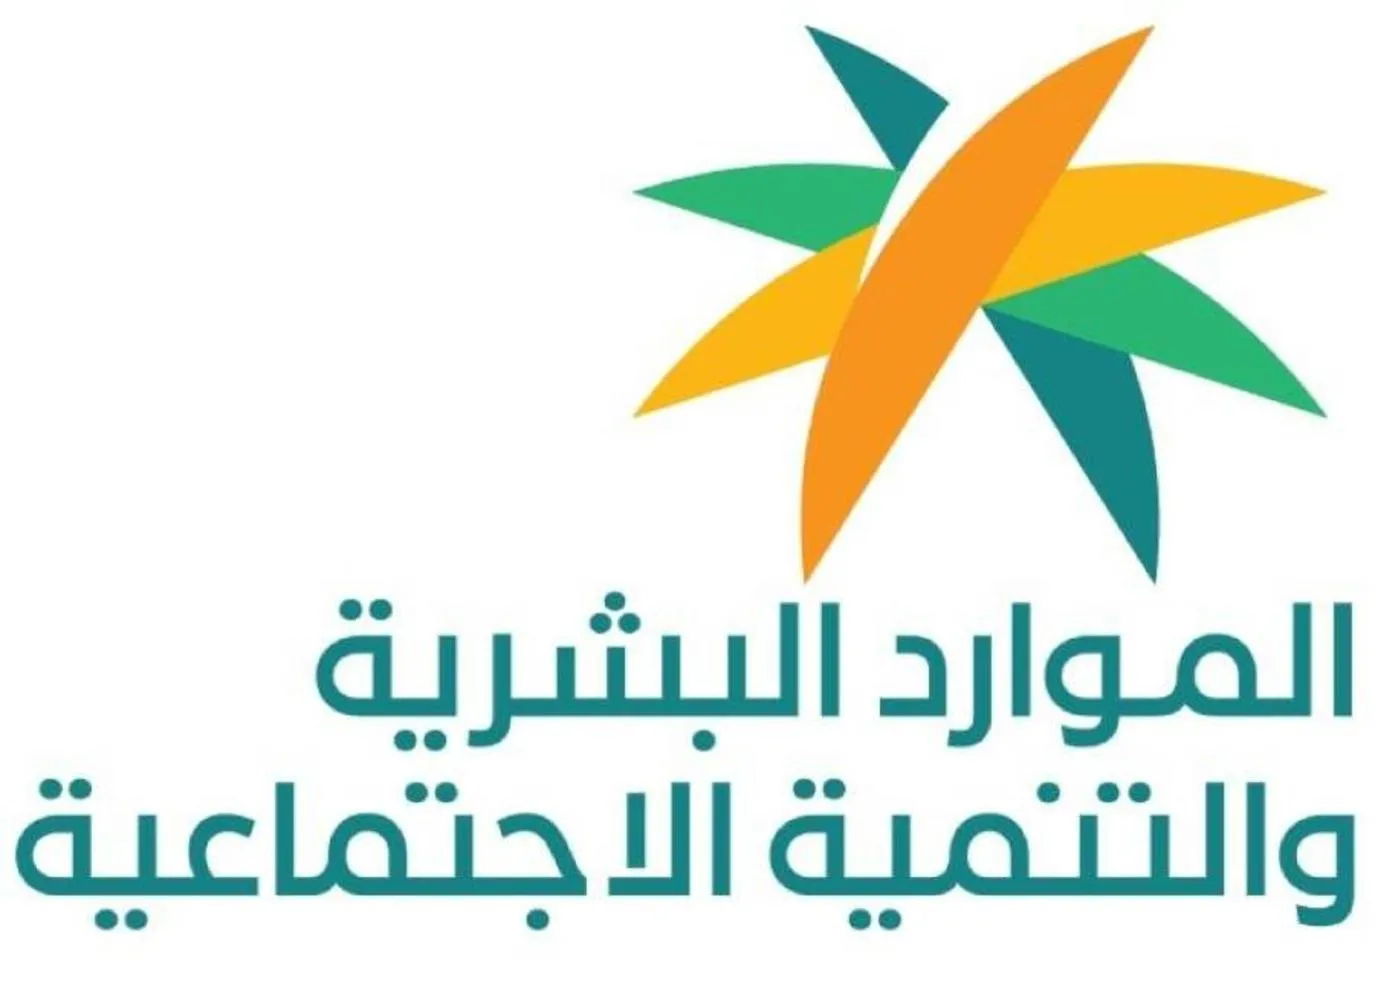 وزارة الموارد البشرية.webp - مدونة التقنية العربية